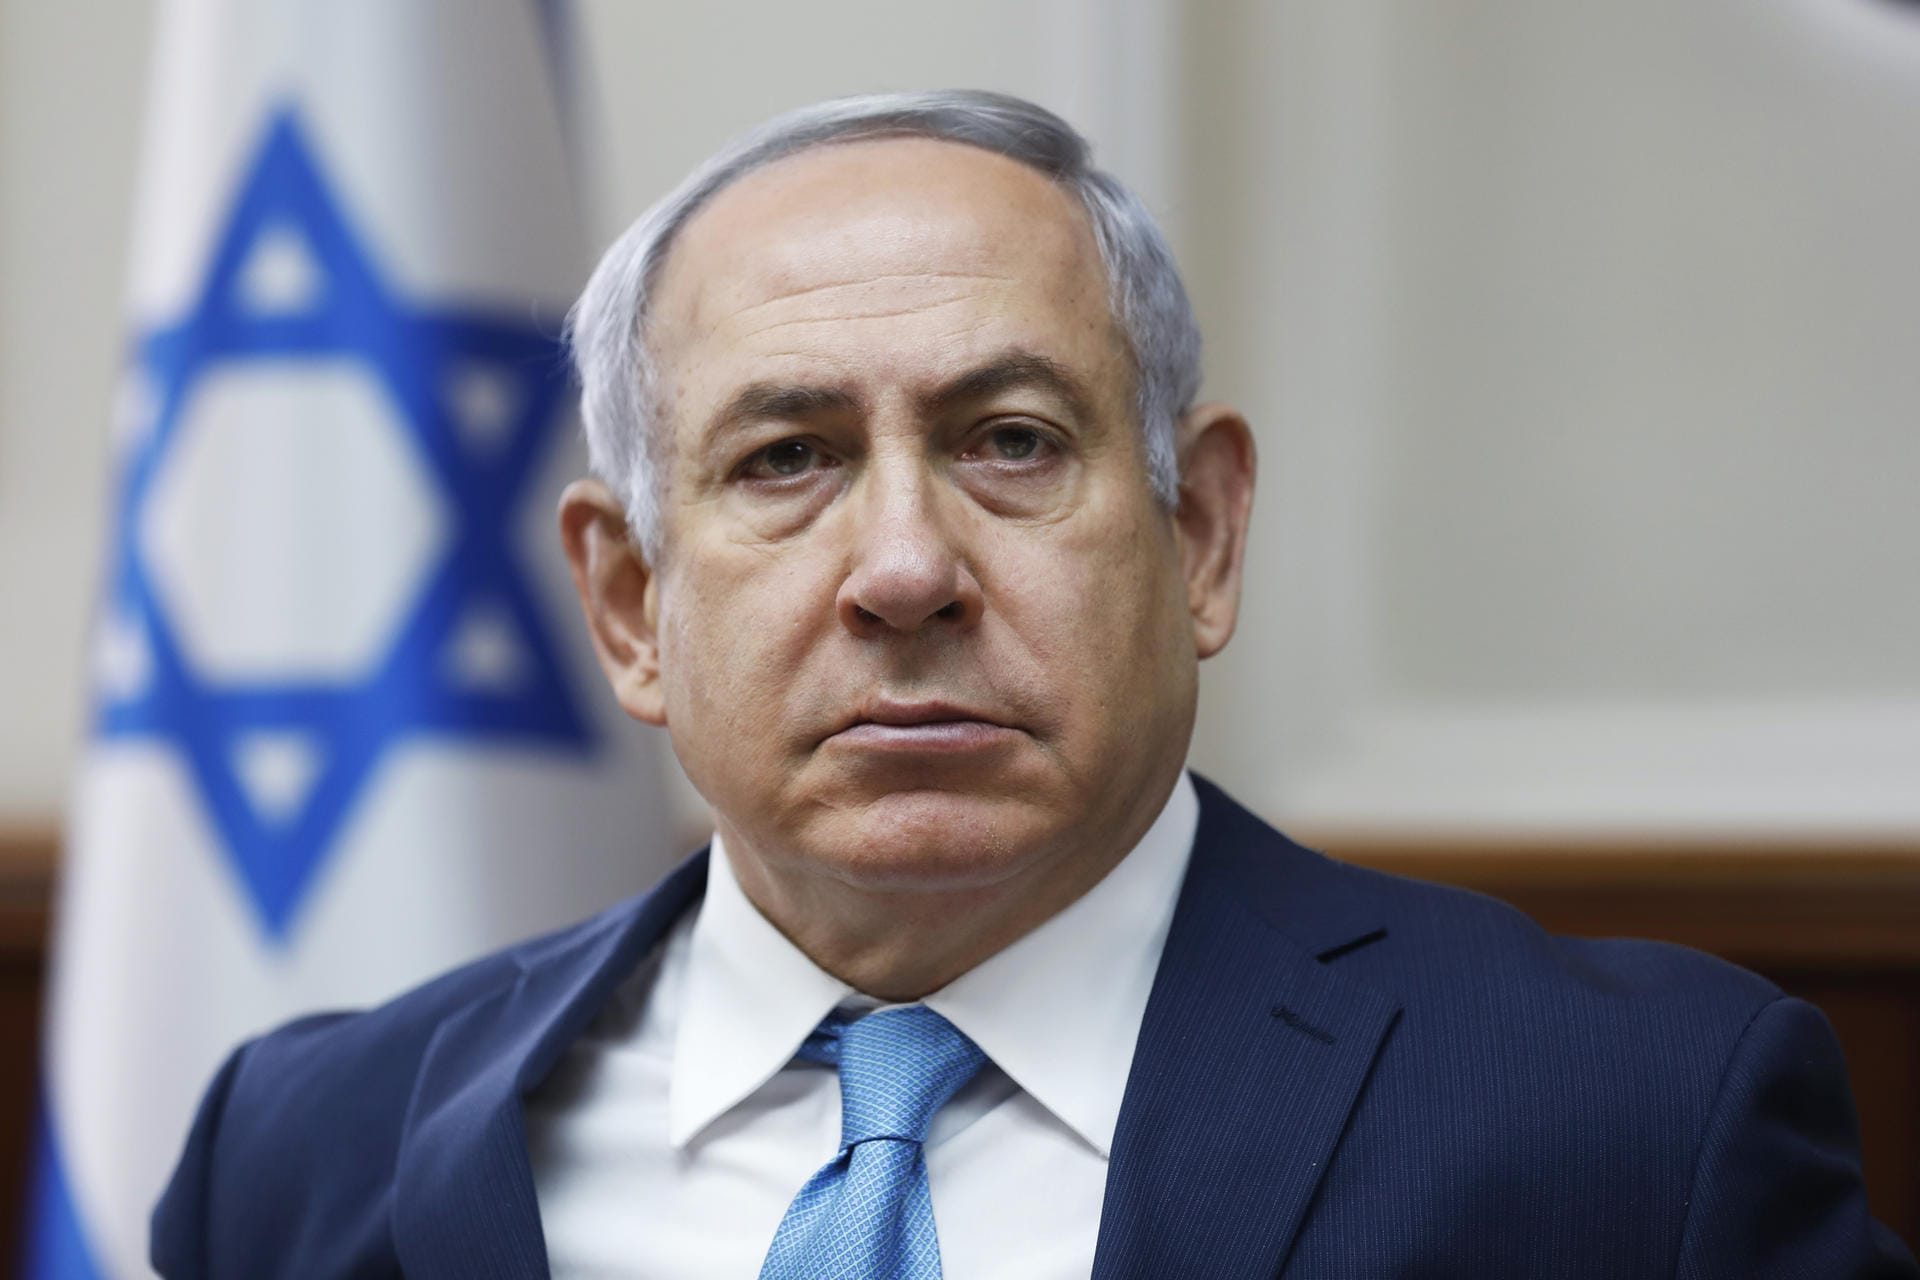 Benjamin Netanjahu: Netanjahu amtiert bereits zum vierten Mal als rechtskonservativer Regierungschef Israels. gilt als schärfster Kritiker des internationalen Atomabkommens mit dem Iran.